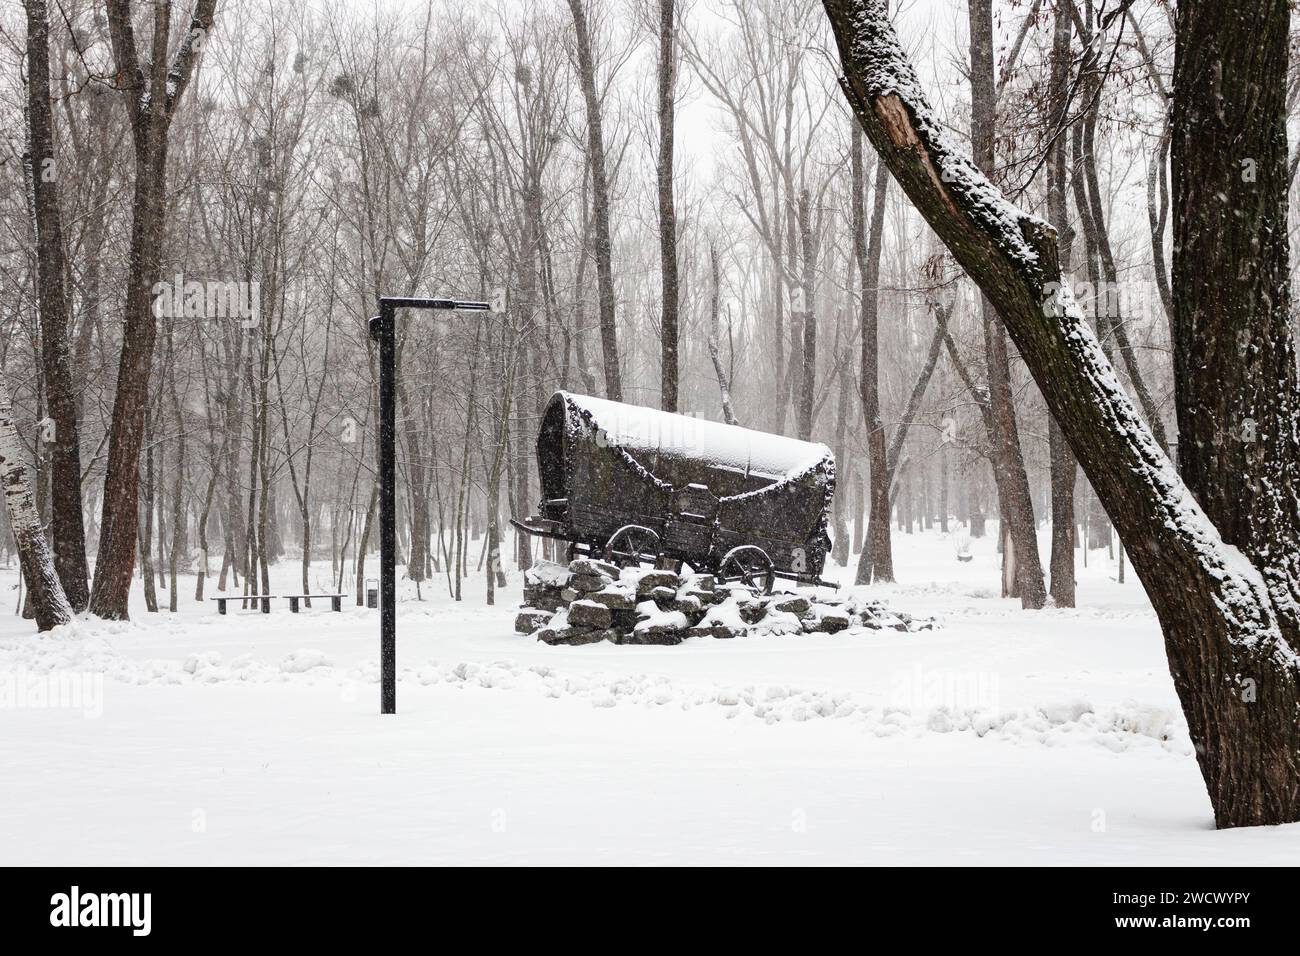 Denkmal des Holocaust der Zigeuner in Babi Jar, Kiew, Ukraine. Zigeunerwagen im Schnee zur Erinnerung an faschistische Opfer. Winterpark im Schneesturm. Wahrzeichen von Kiew. Stockfoto